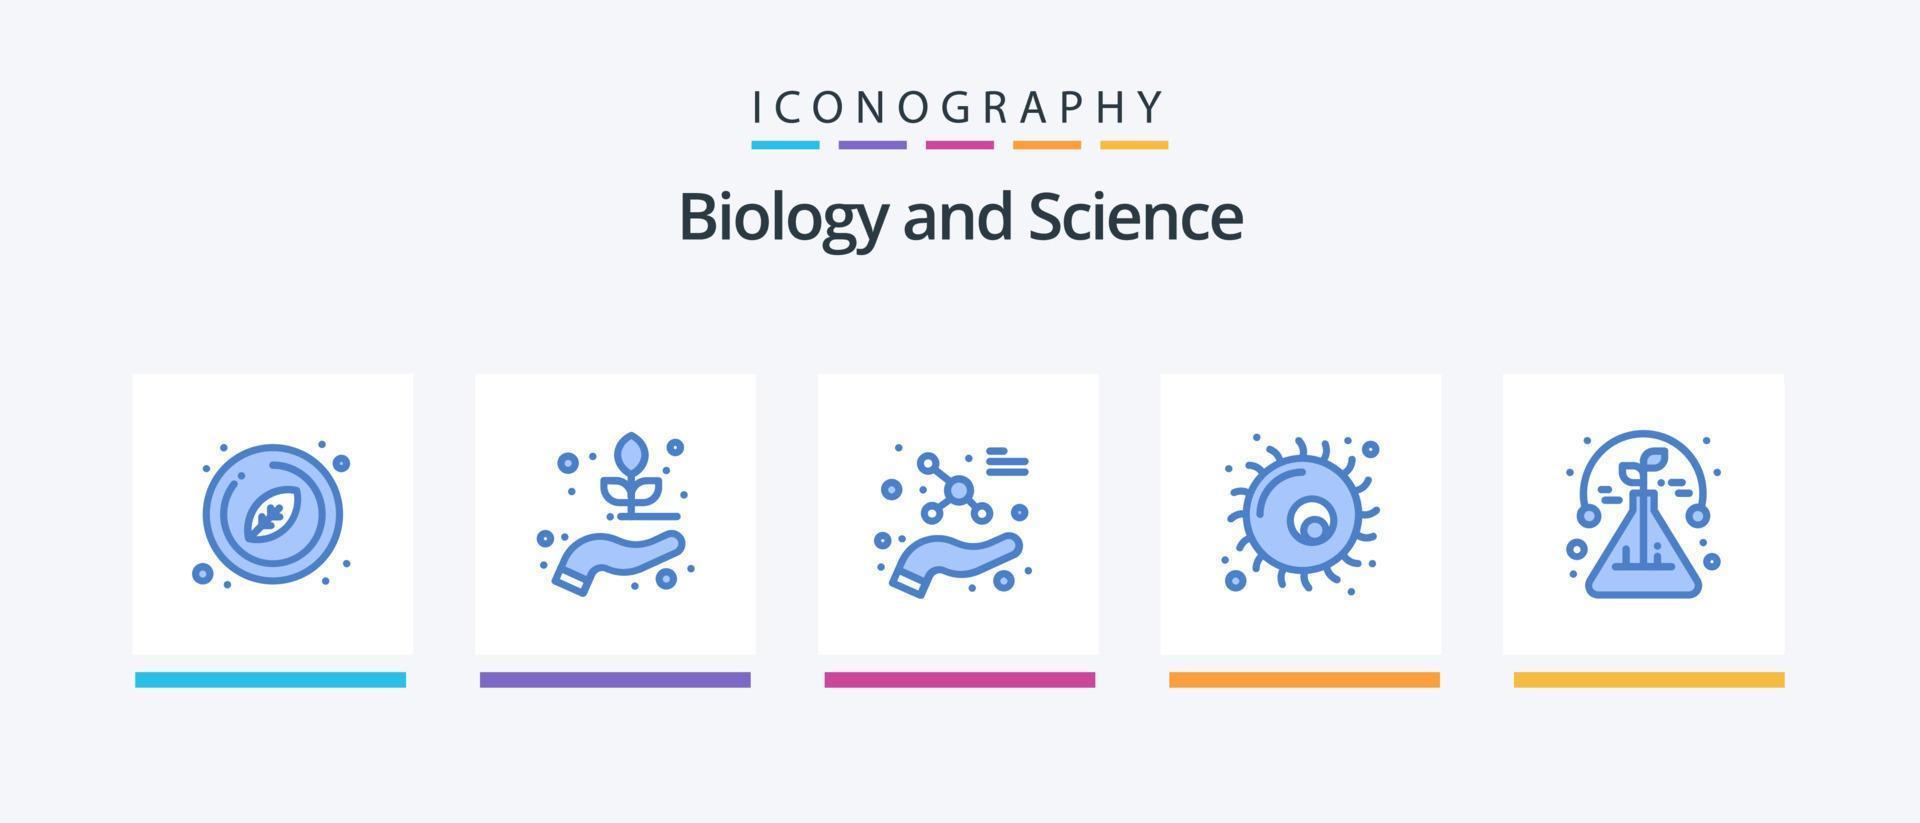 biologi blå 5 ikon packa Inklusive vetenskap. växt. skydda. cell. djur. kreativ ikoner design vektor